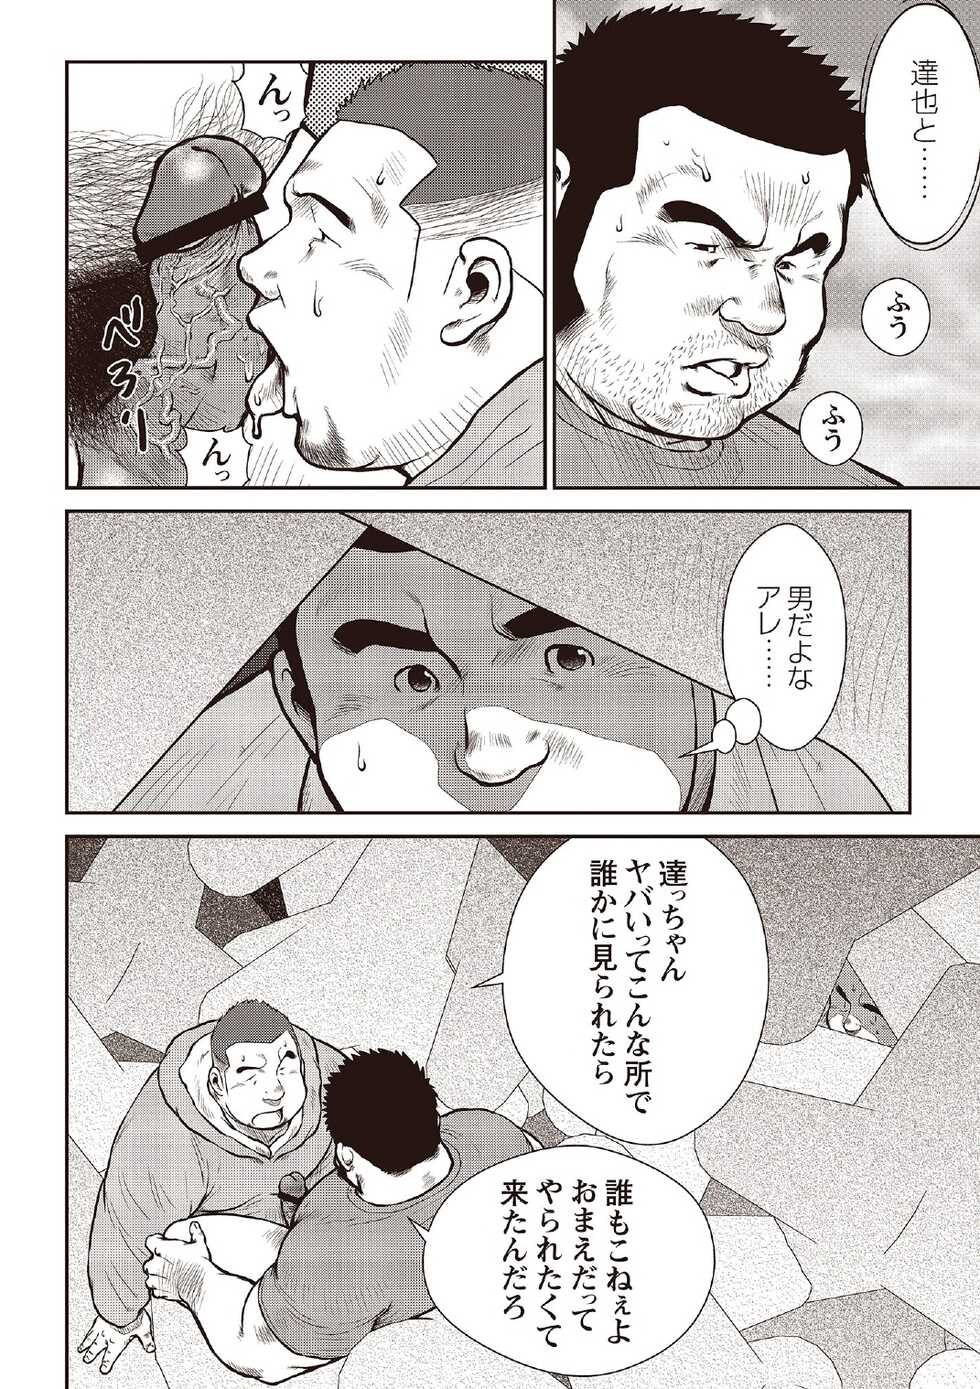 [Ebisubashi Seizou] Ebisubashi Seizou Tanpen Manga Shuu 2 Fuuun! Danshi Ryou [Bunsatsuban] PART 2 Bousou Hantou Taifuu Zensen Ch. 1 + Ch. 2 [Digital] - Page 14